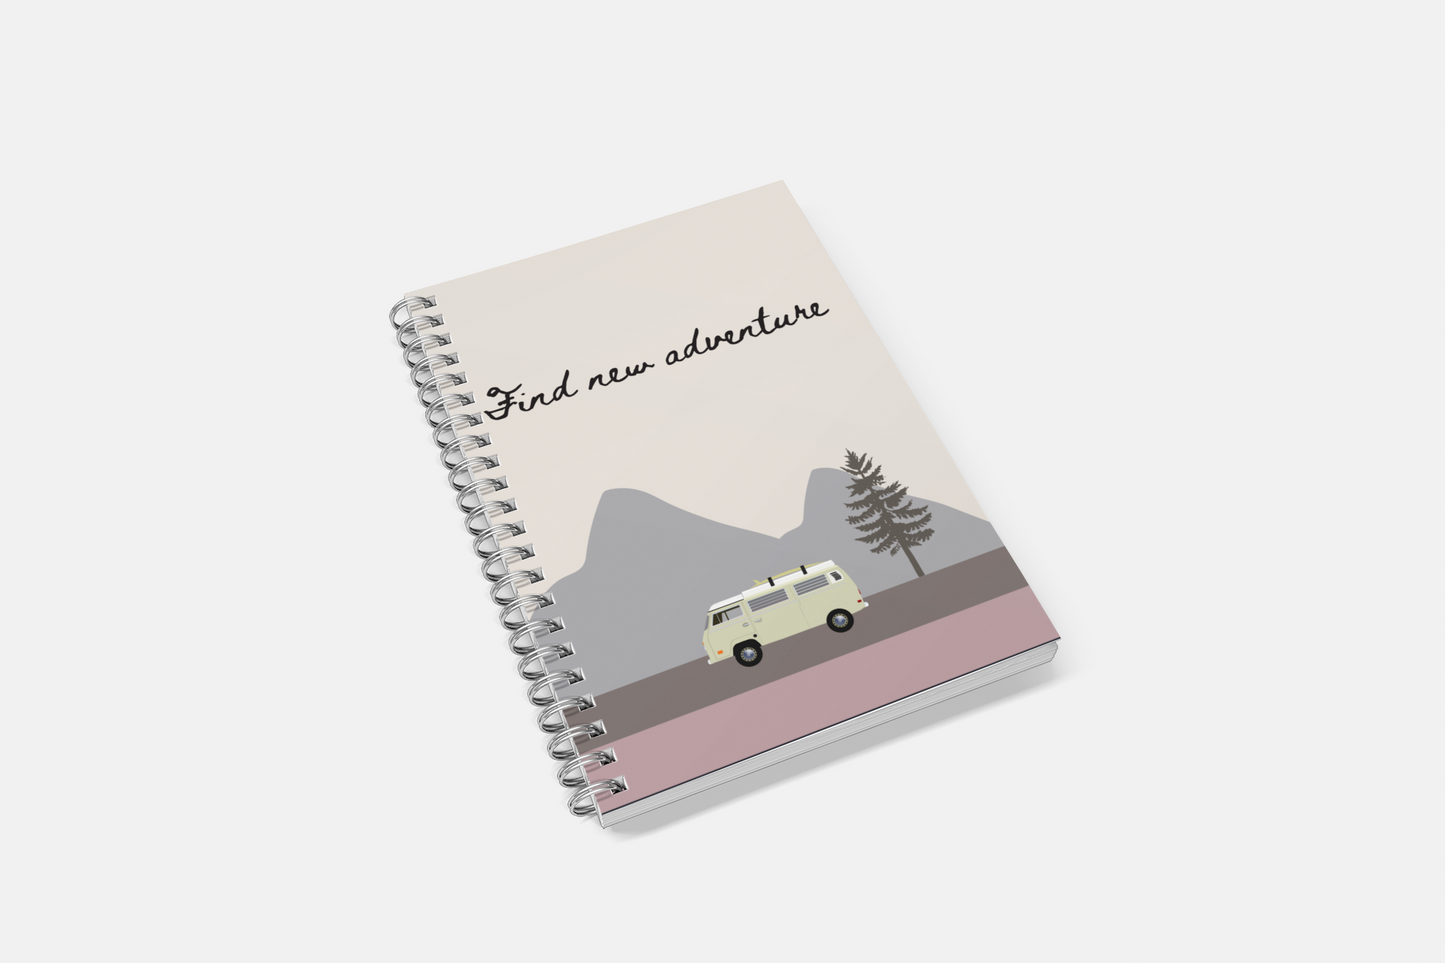 Find New Adventure Notebook